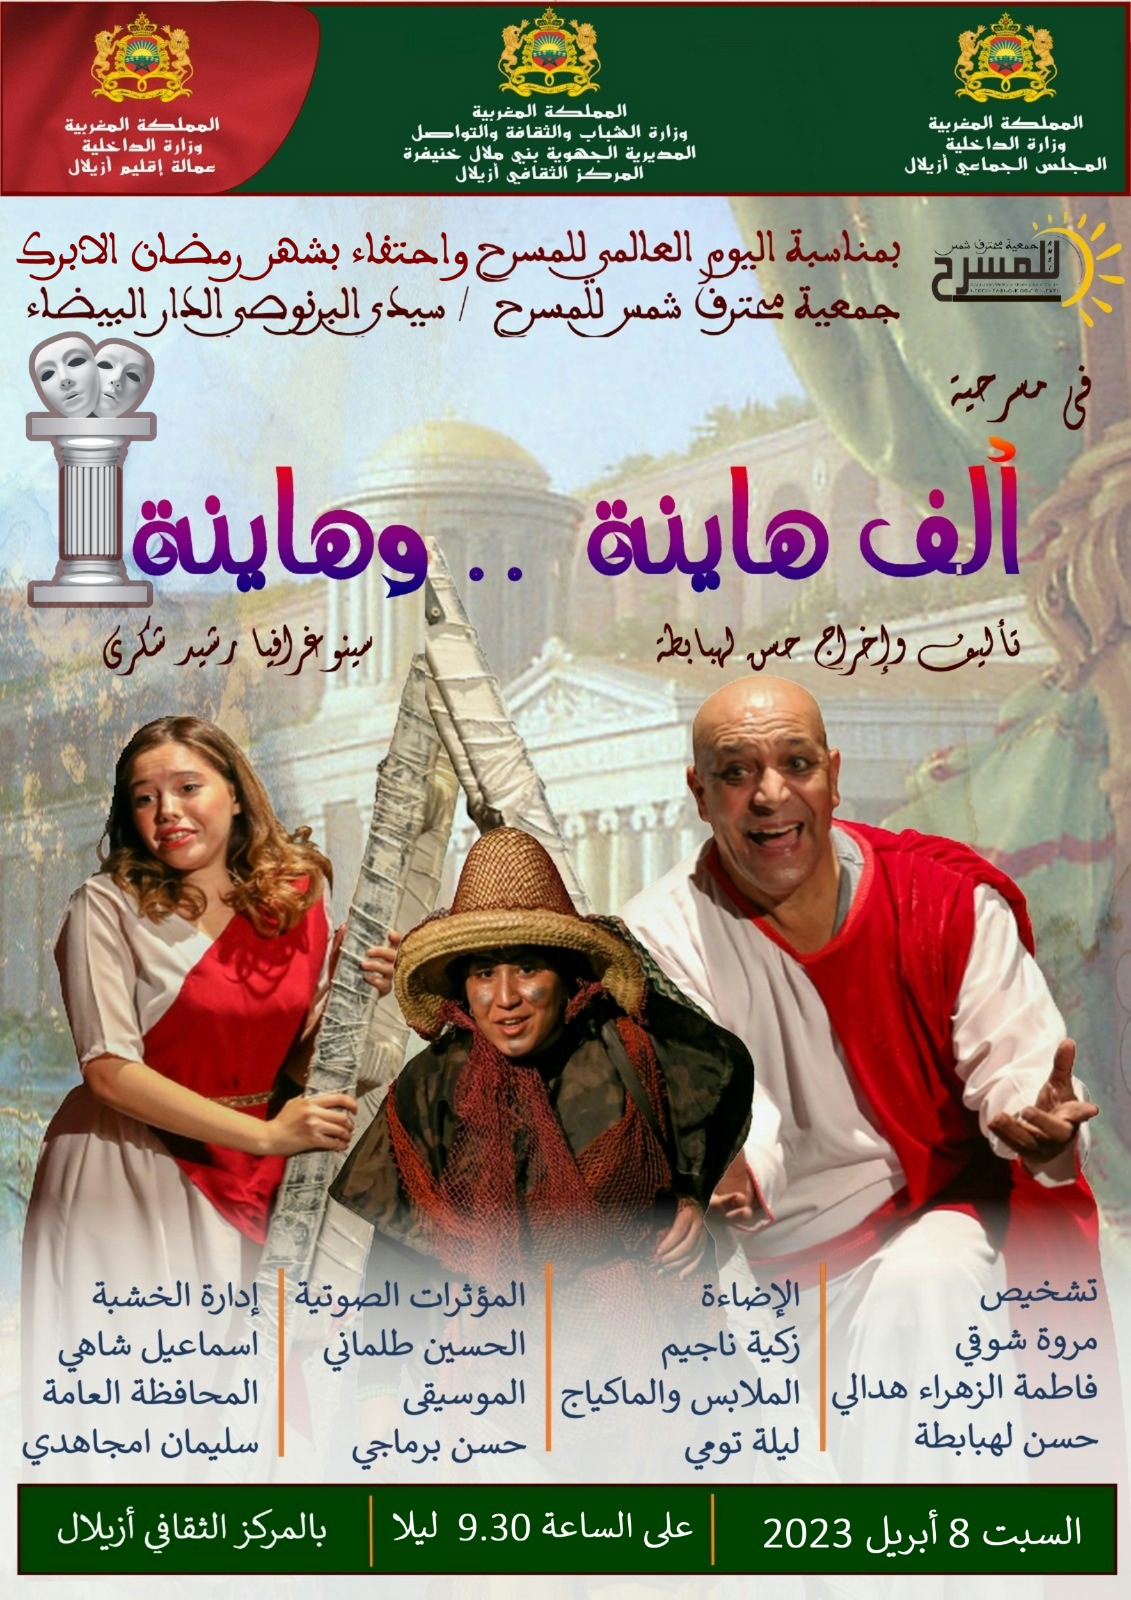  المركز الثقافي بأزيلال ..فرقة جمعية محترف شمس للمسرح تقدم عرضها المسرحي 